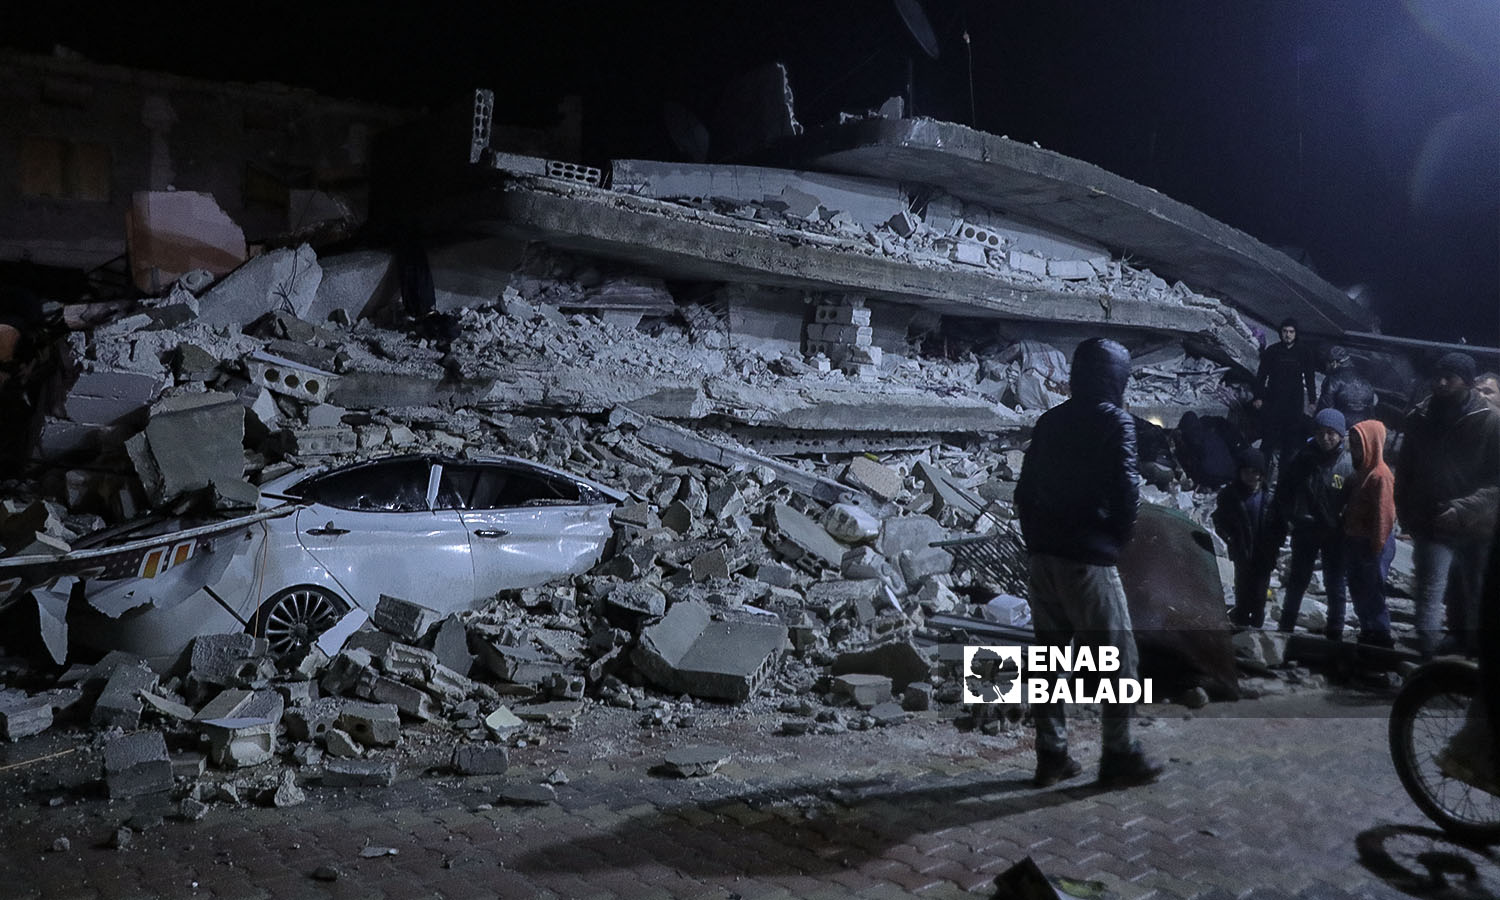 انهيار بناء في عزمارين بريف سلقين إثر زلزال ضرب مناطق شمال غربي سوريا - 6 شباط 2023 (عنب بلدي/ محمد نعسان دبل)